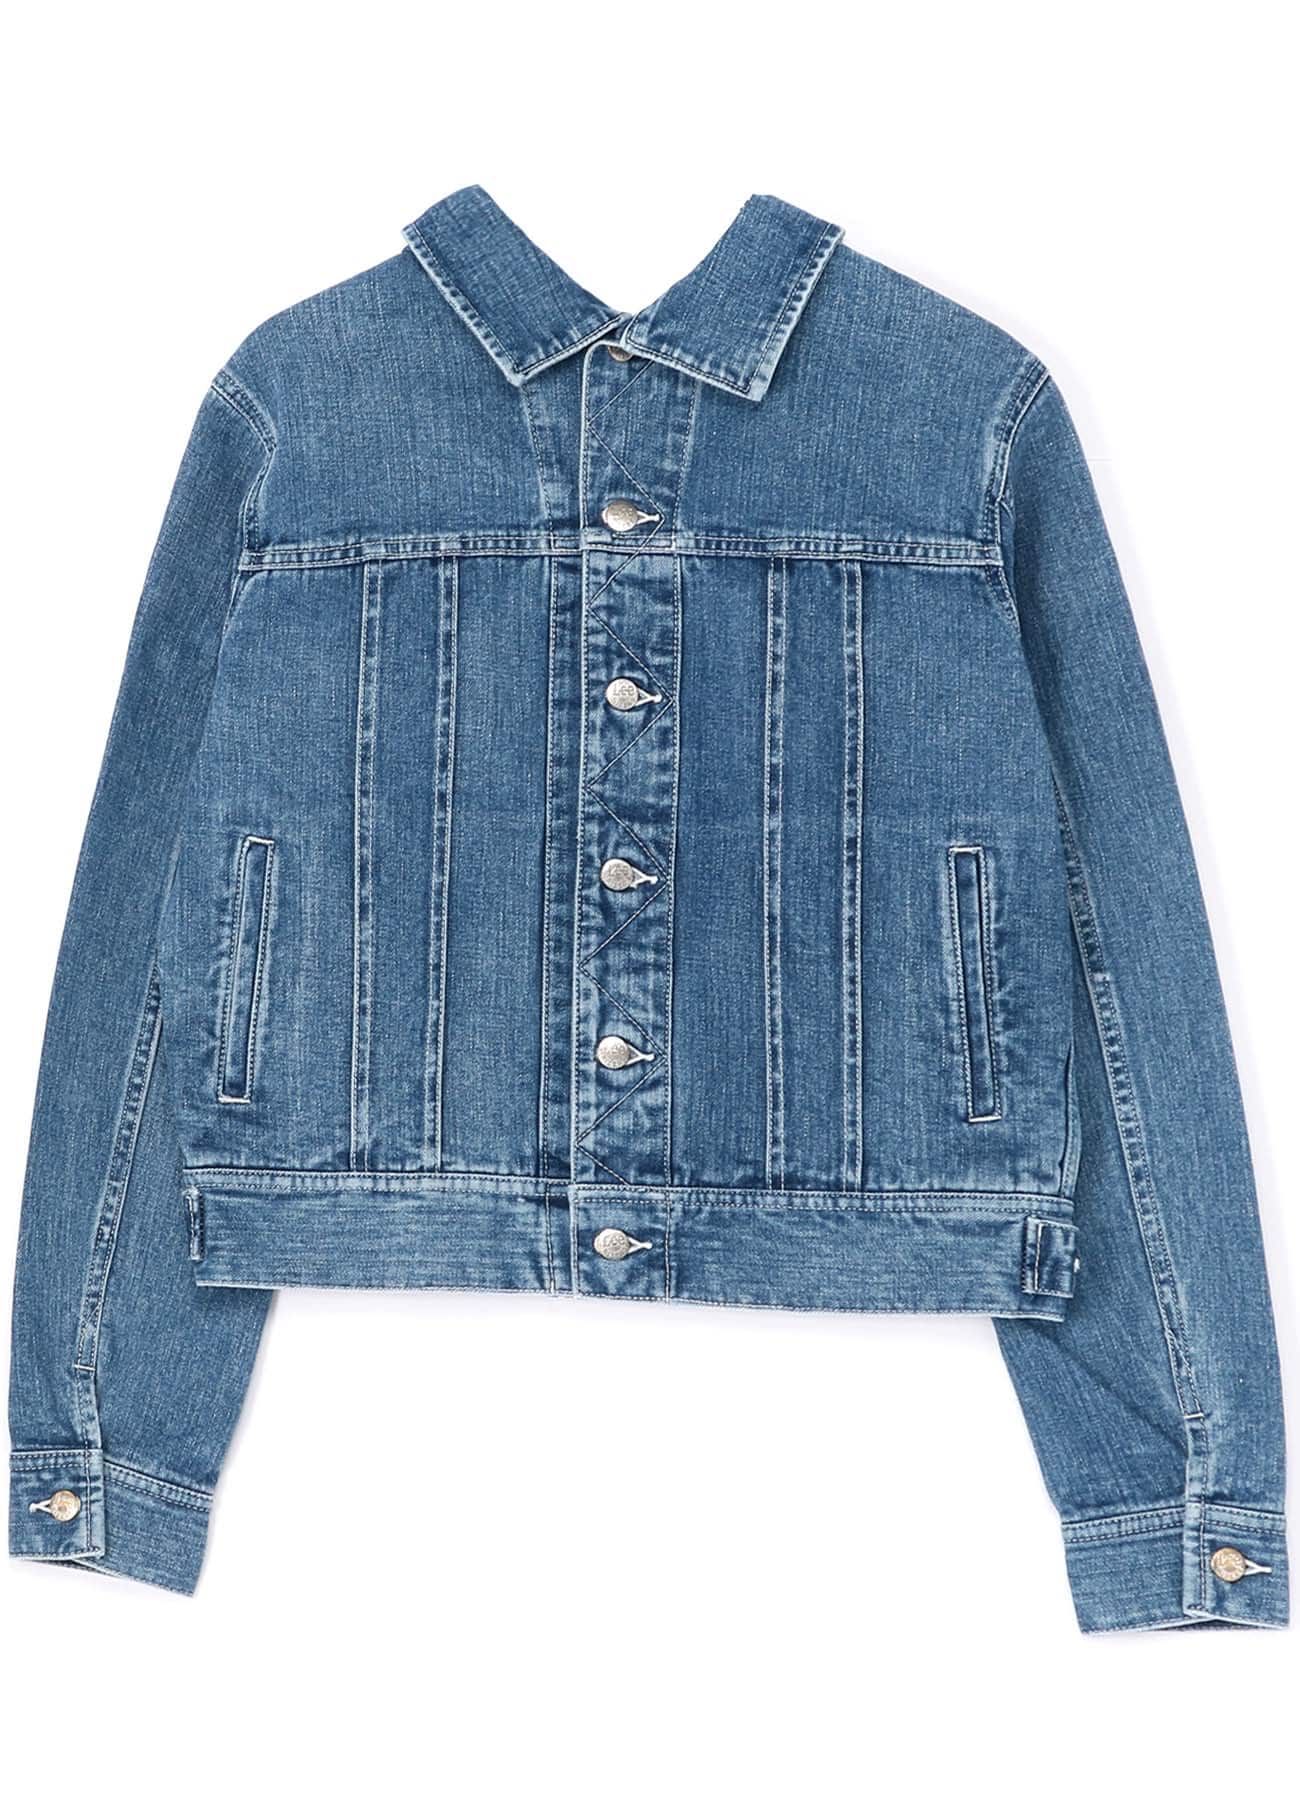 LIMI feu×Lee Reversible Jacket(S Blue): Vintage 1.1｜THE SHOP